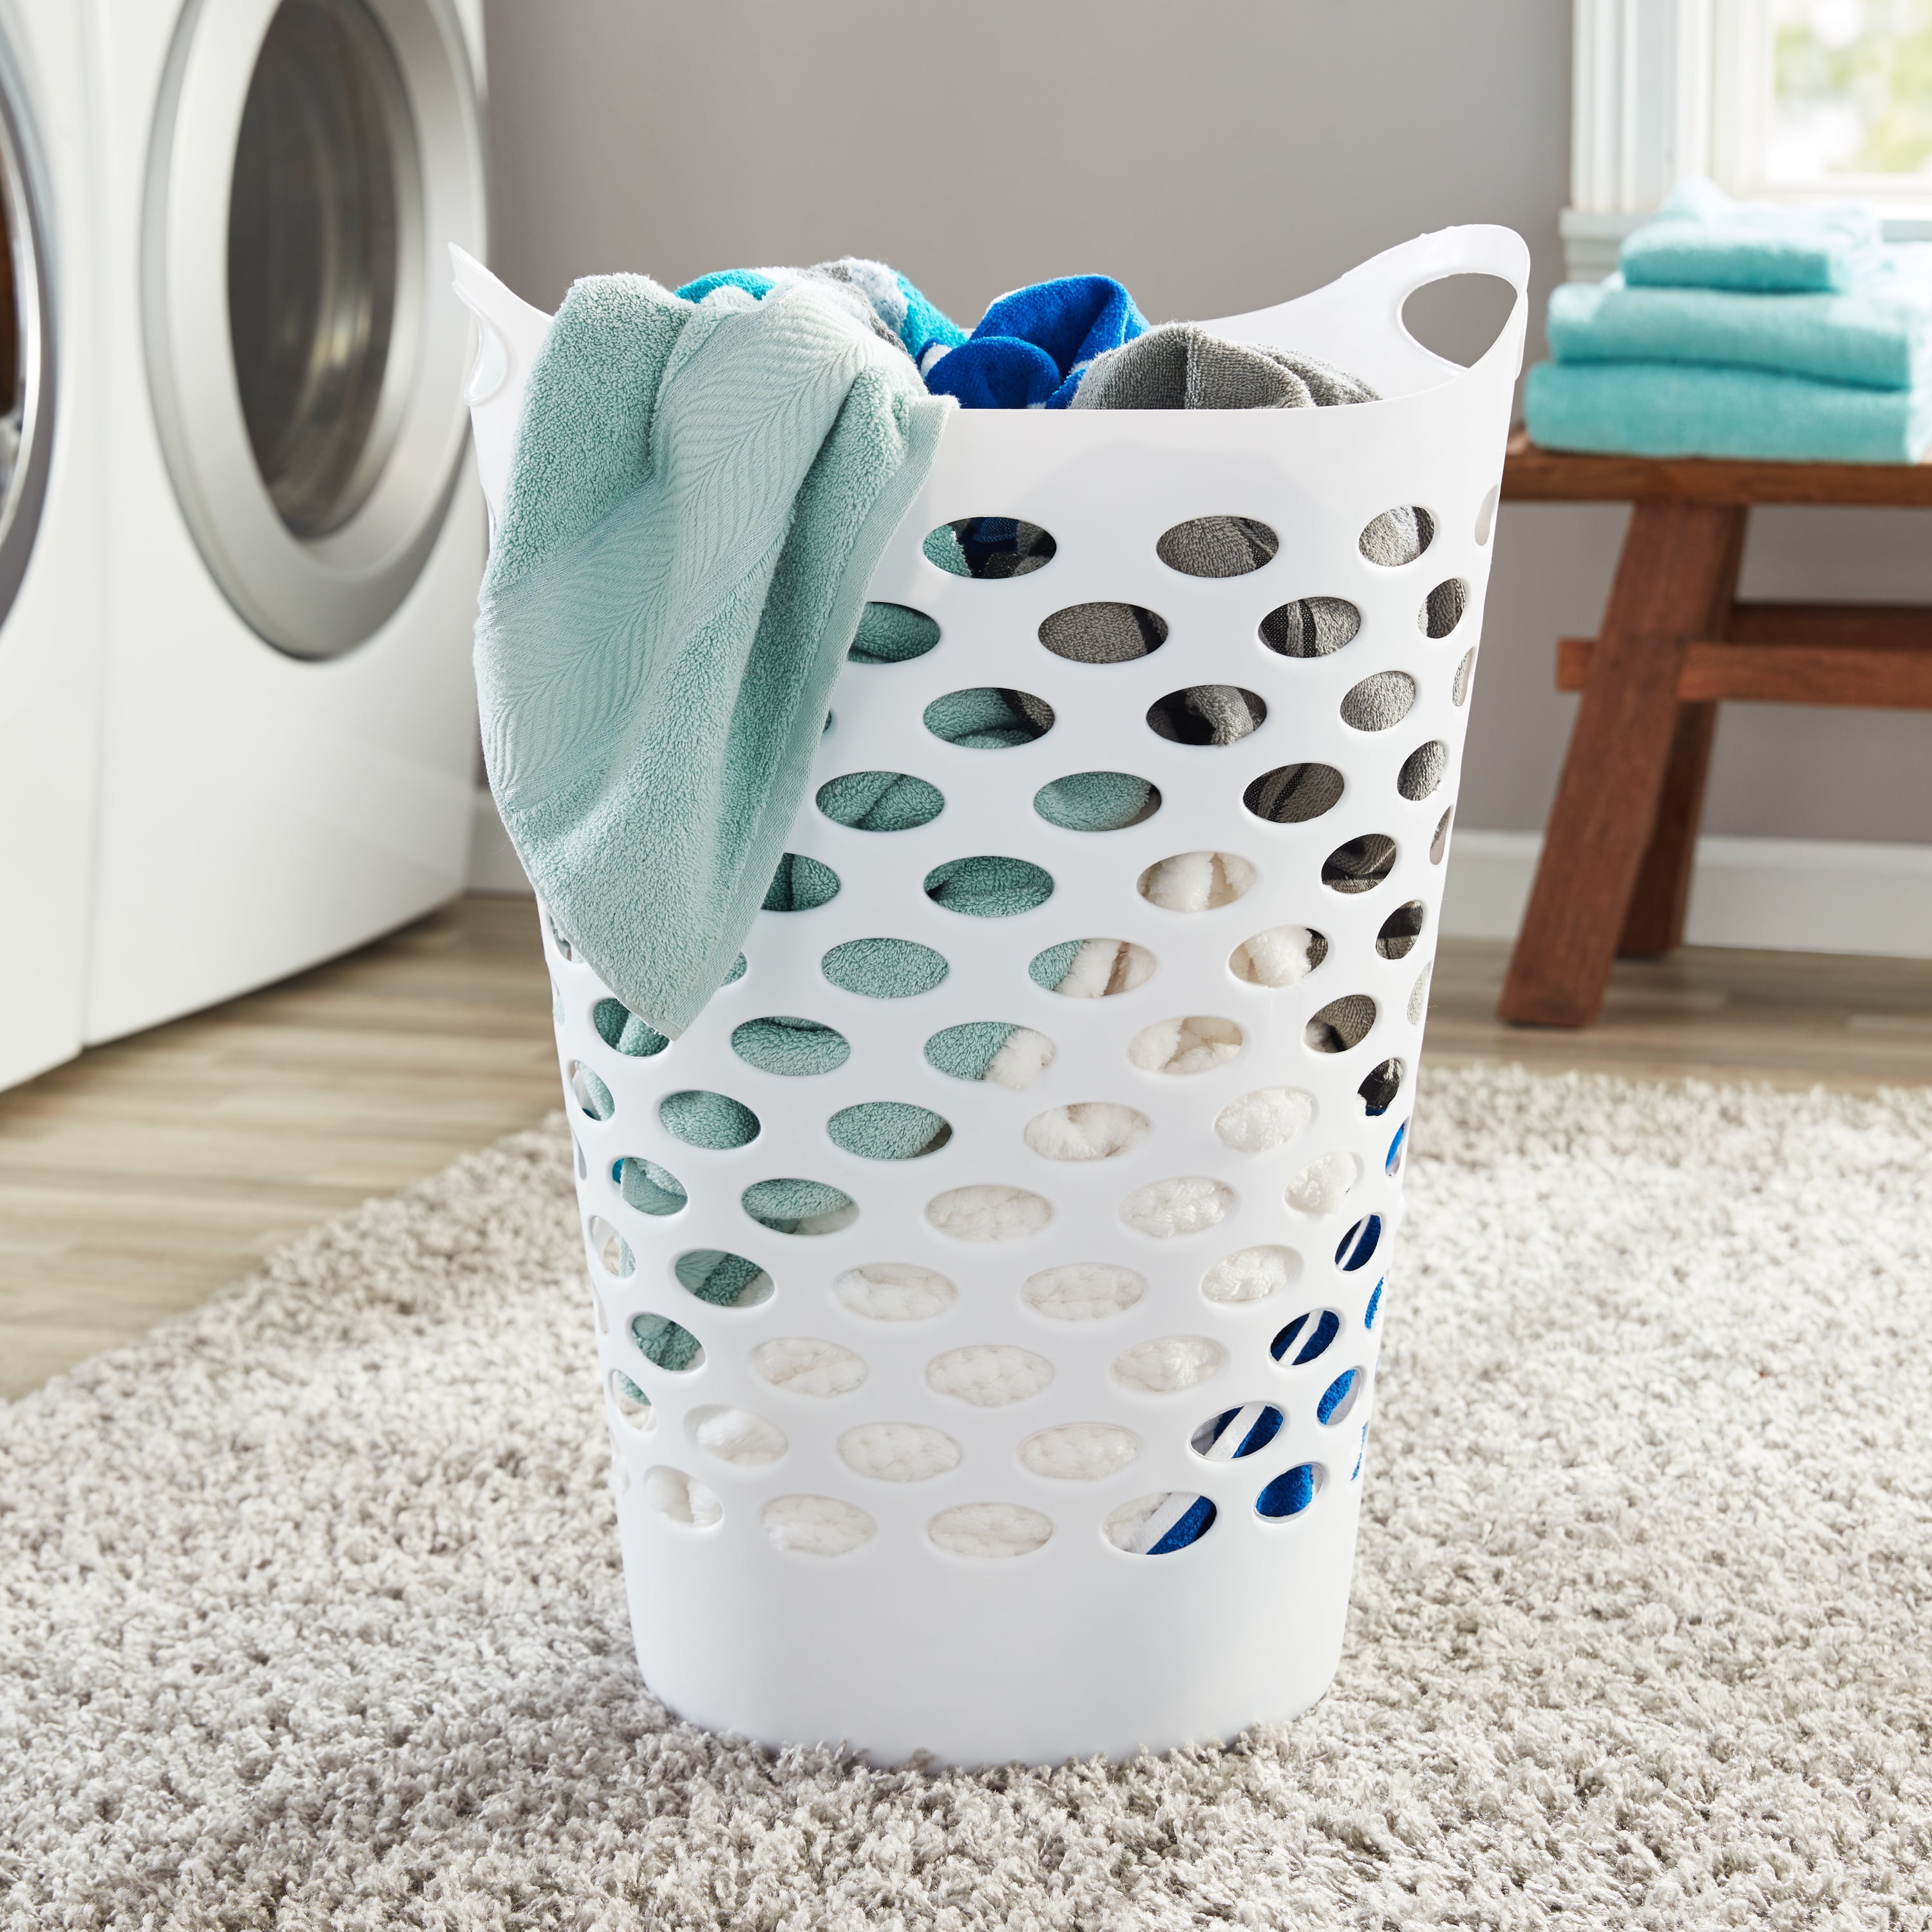 Mainstays Rectangular Open Laundry Hamper Plastic, Aqua Sparkle